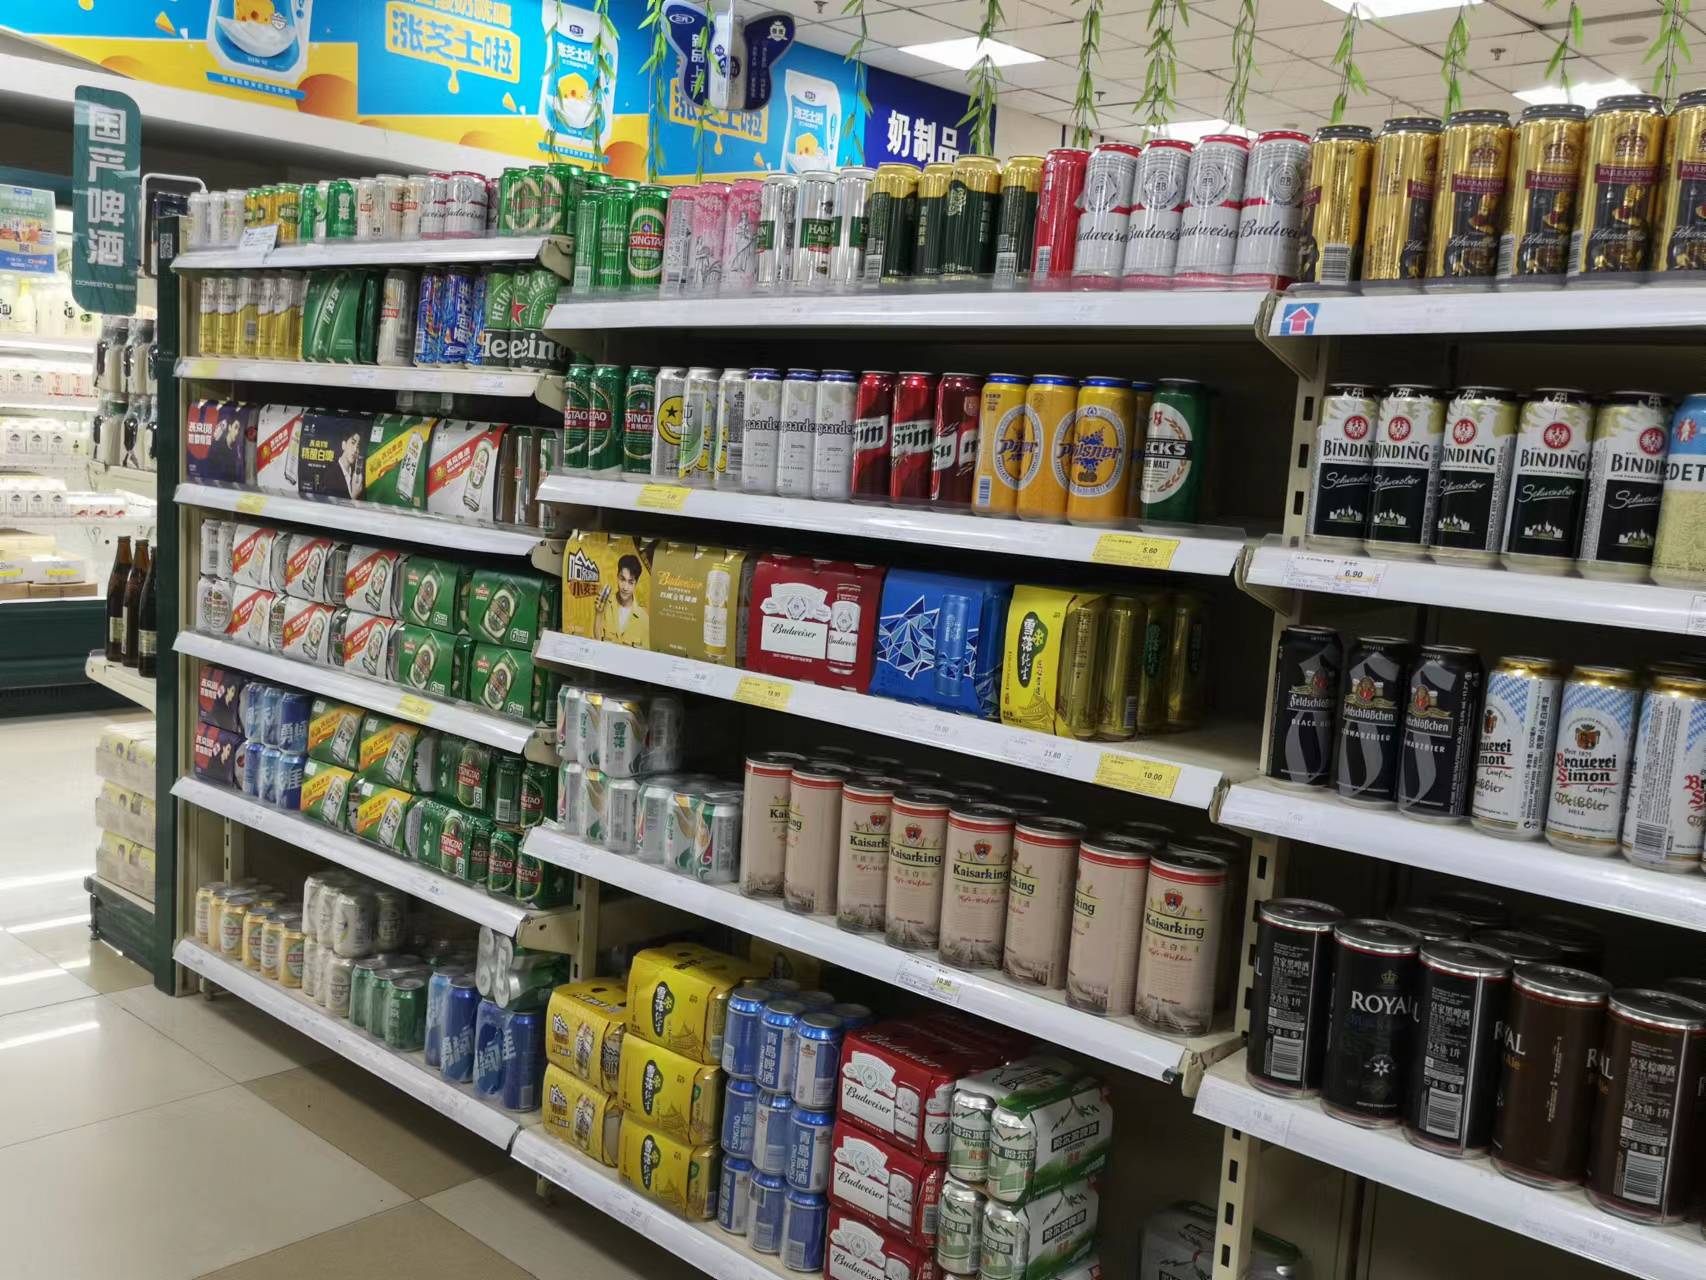 京客隆超市啤酒主货架均为听装产品。孟刚/摄